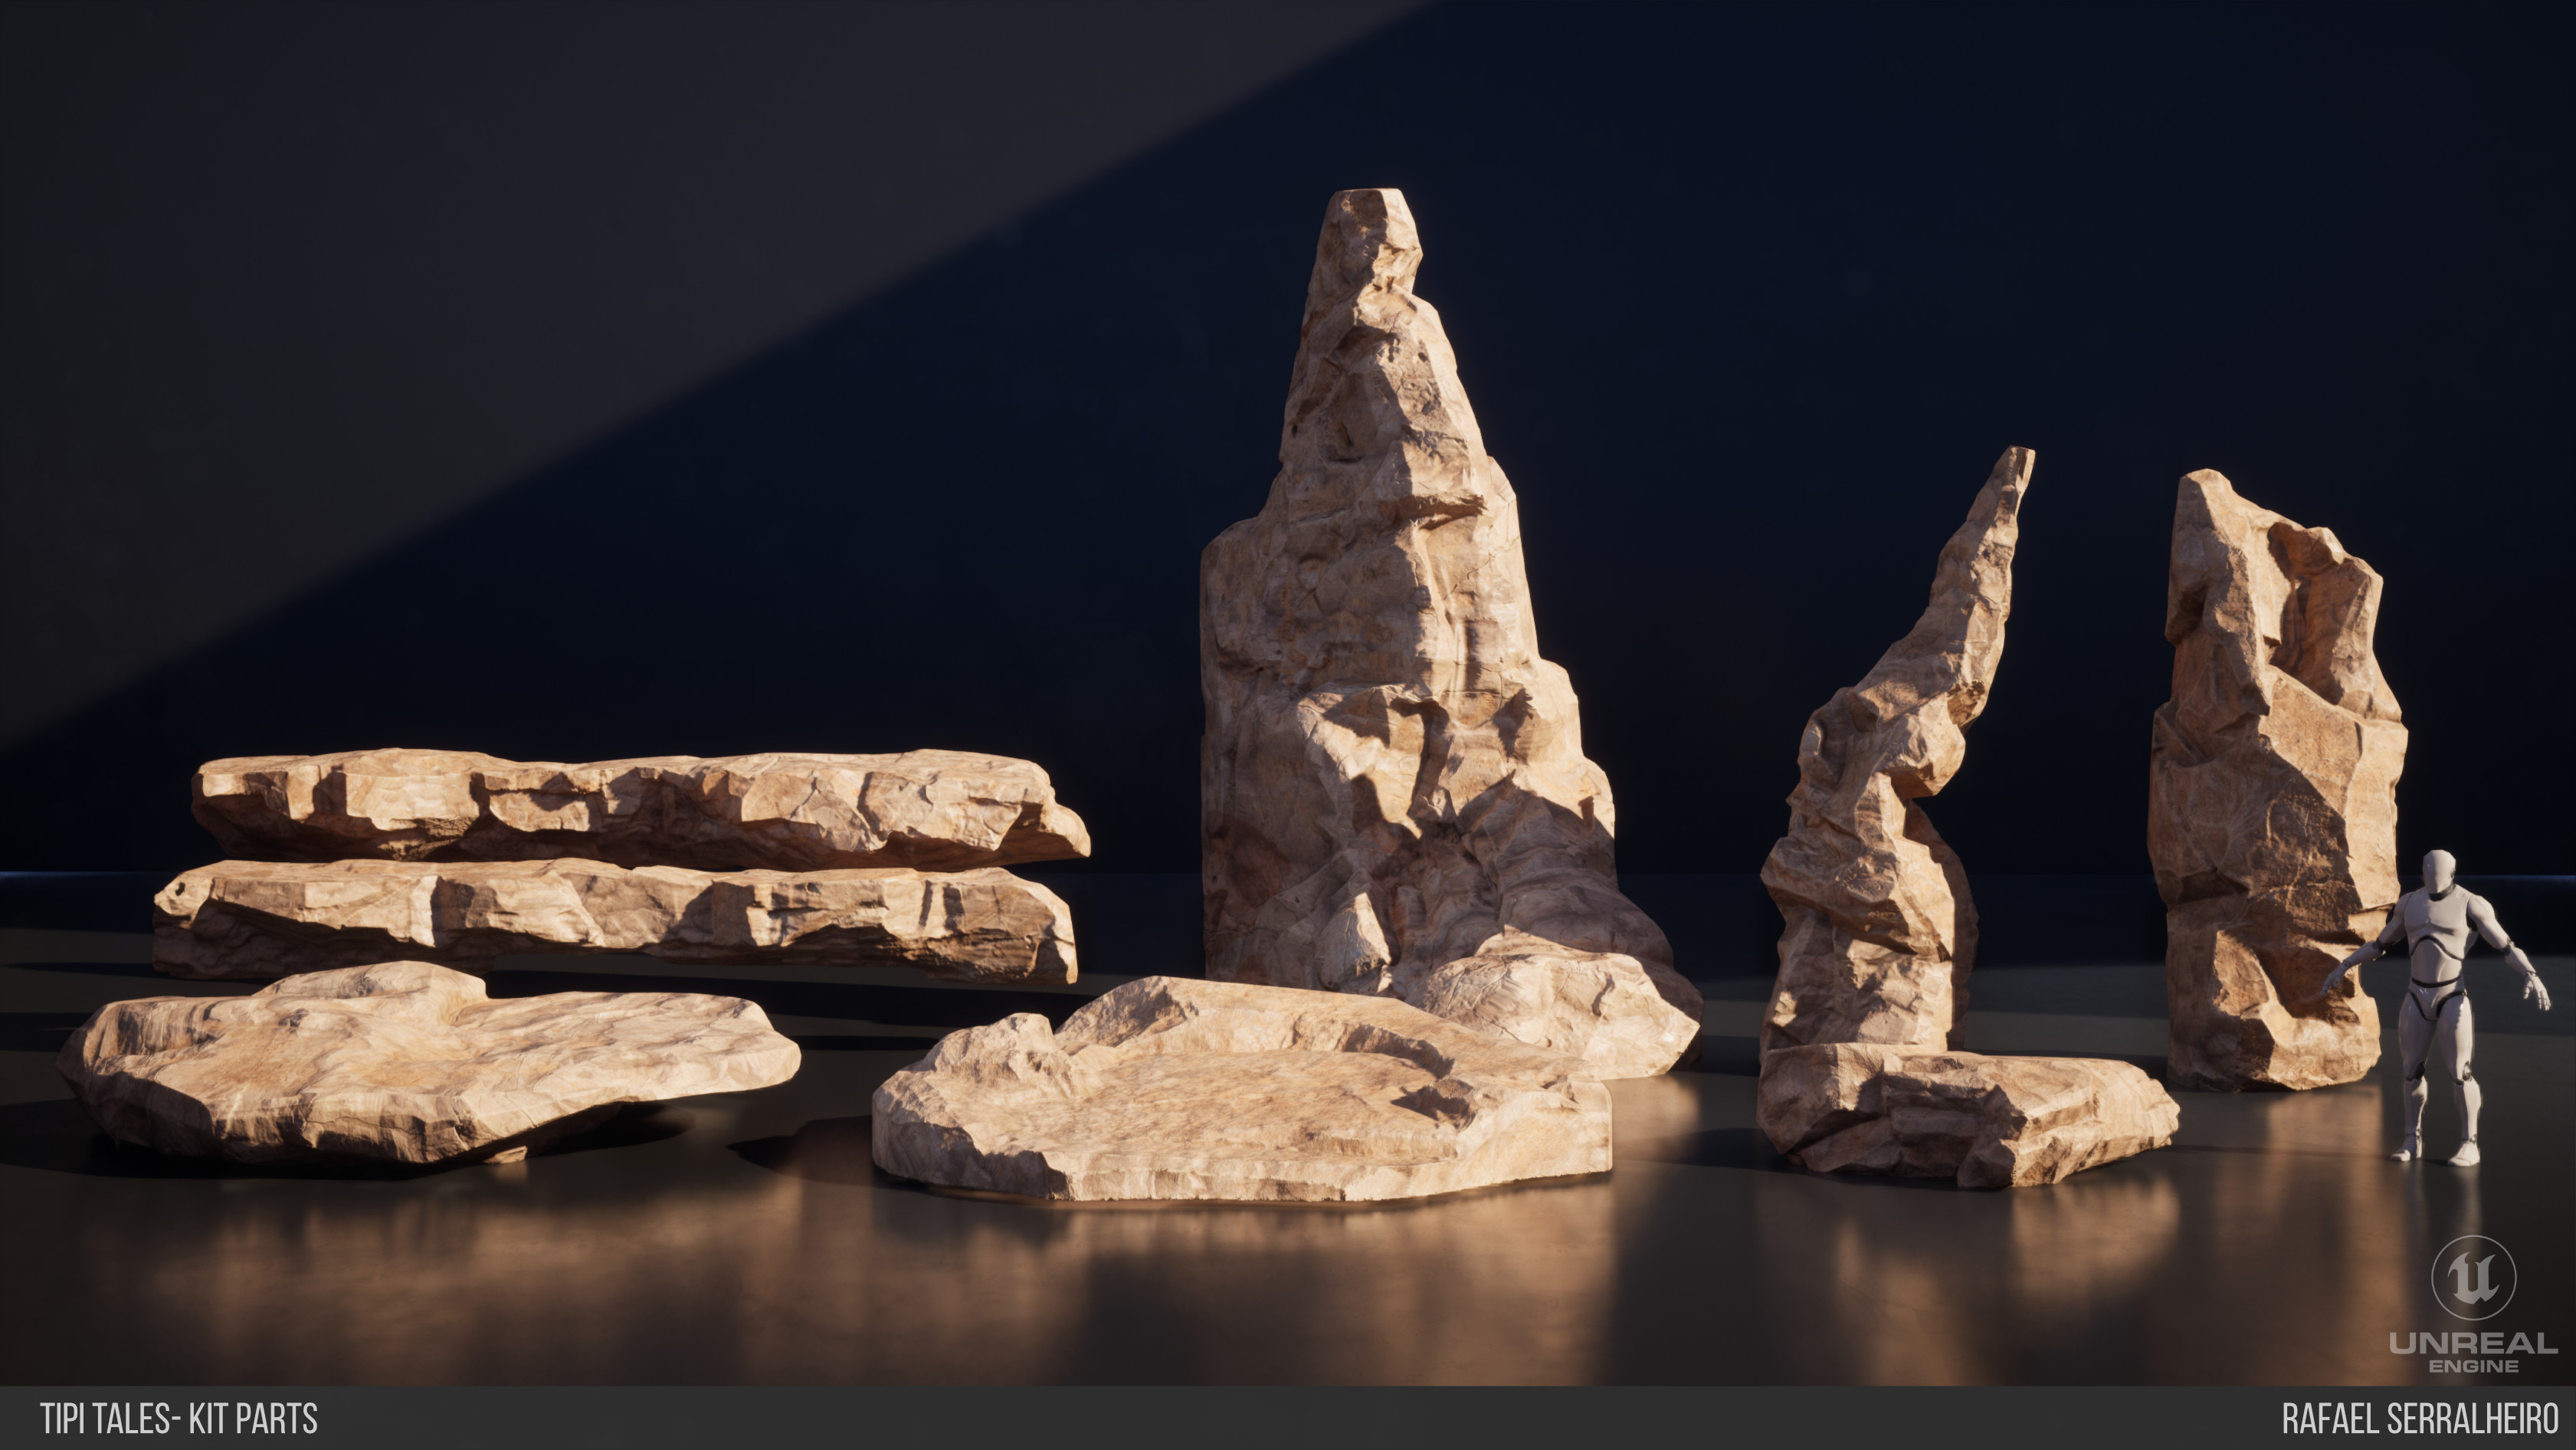 Tipi tales Kit - Medium Rocks